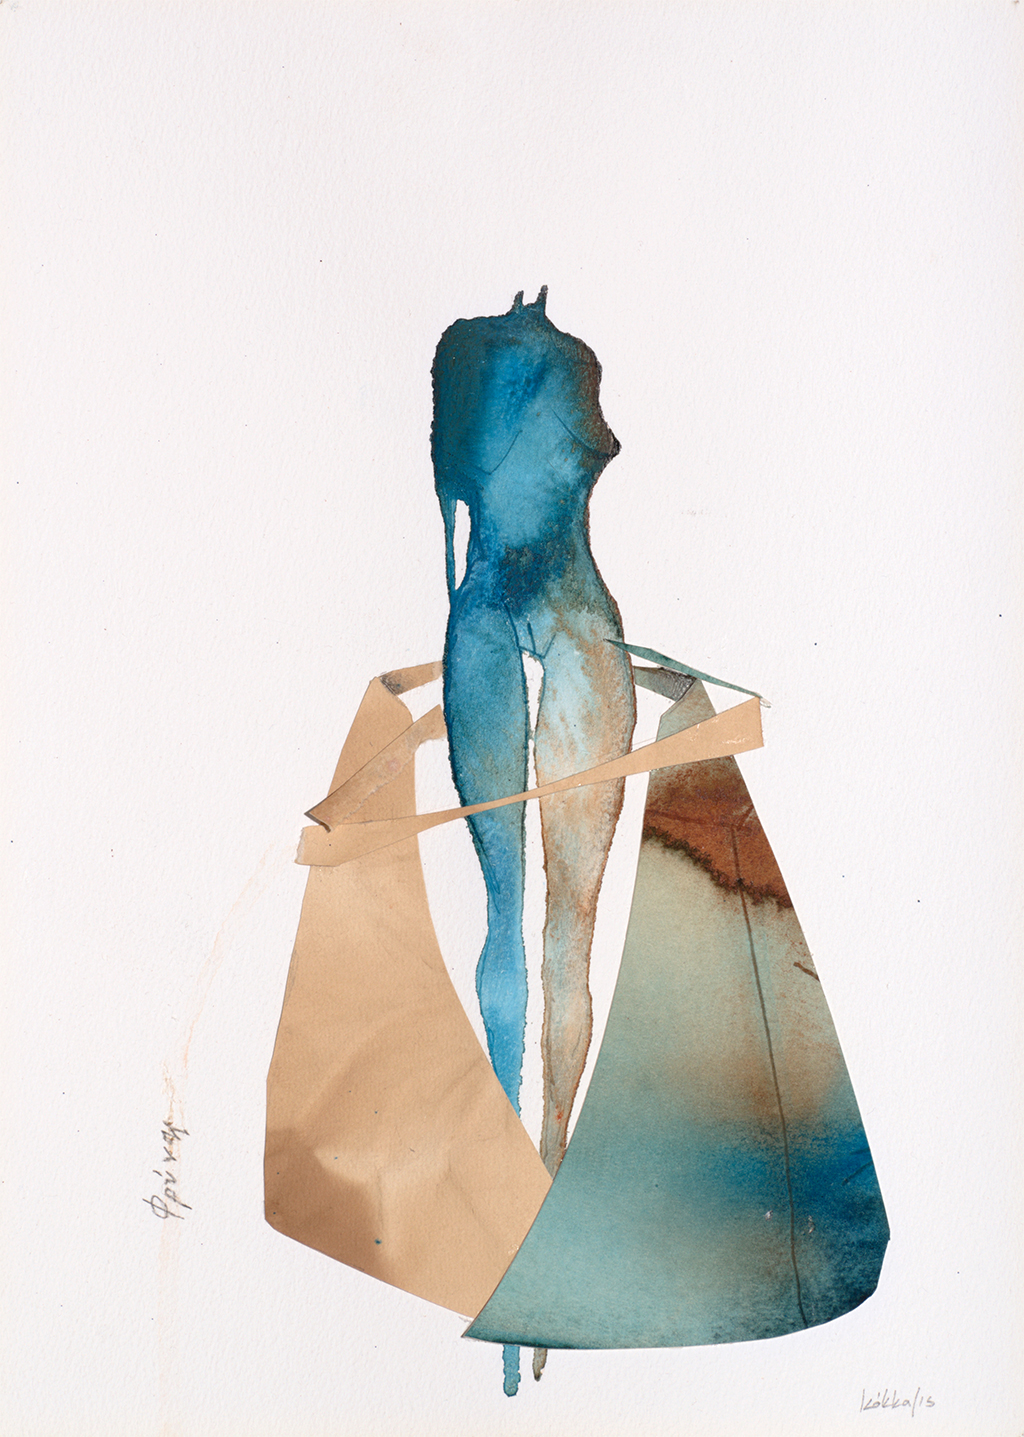 Έργο ζωγραφικής του Ν. Κόκκαλη. Φρύνη.Ακουαρέλα με ακέφαλη γαλάζια γυναικεία φιγούρα